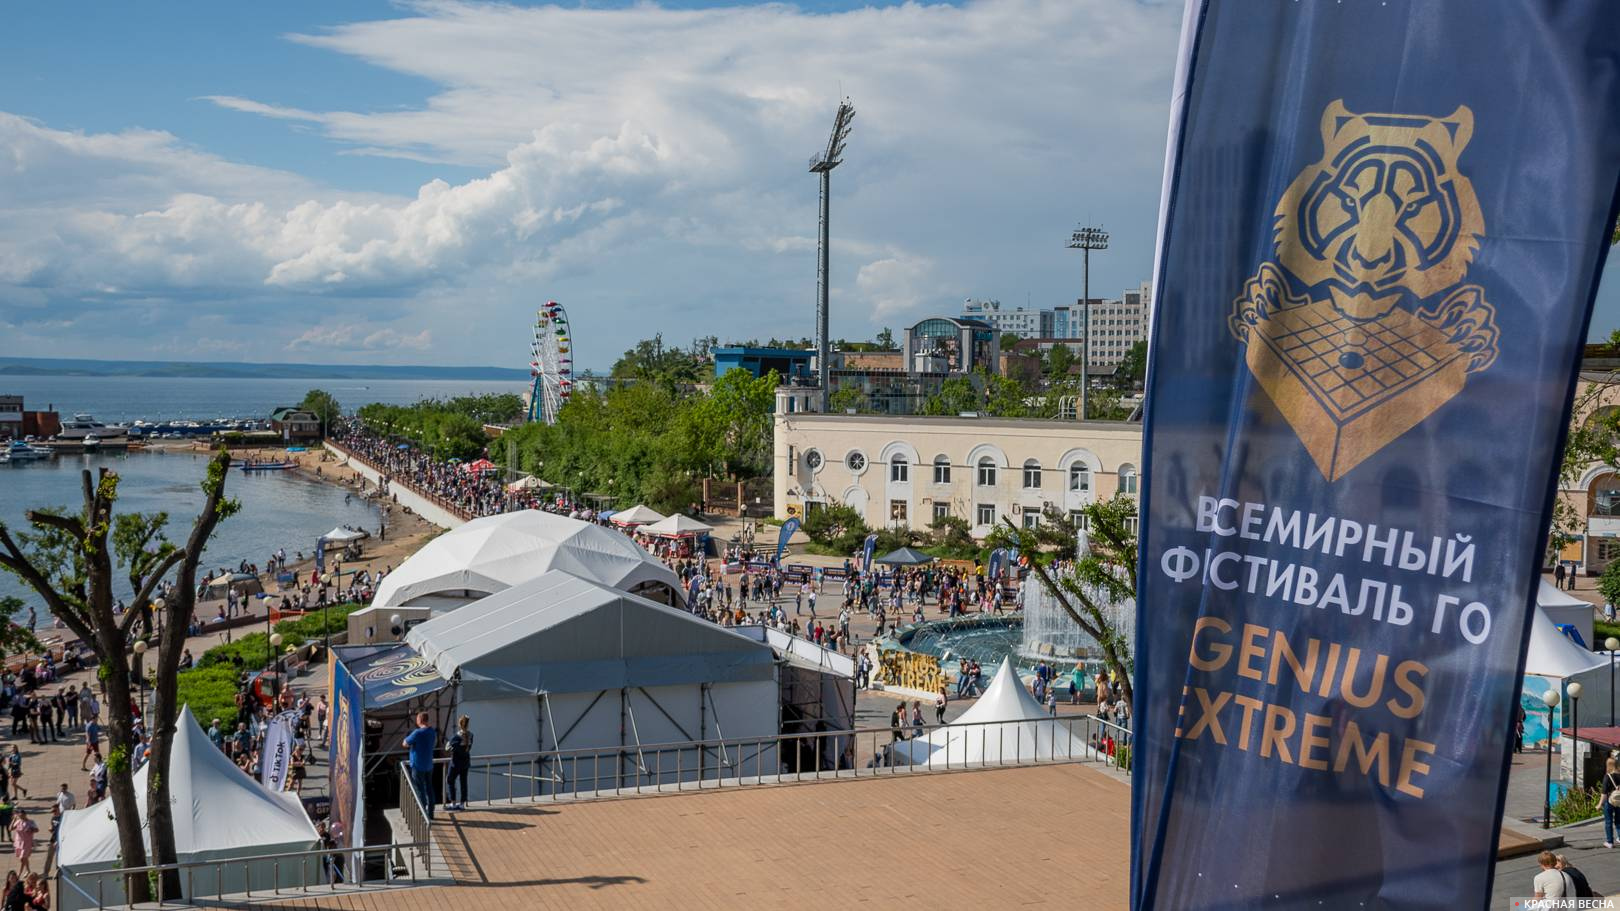 Фестиваль Genius Extreme, Владивосток, 7 июня 2021 г.